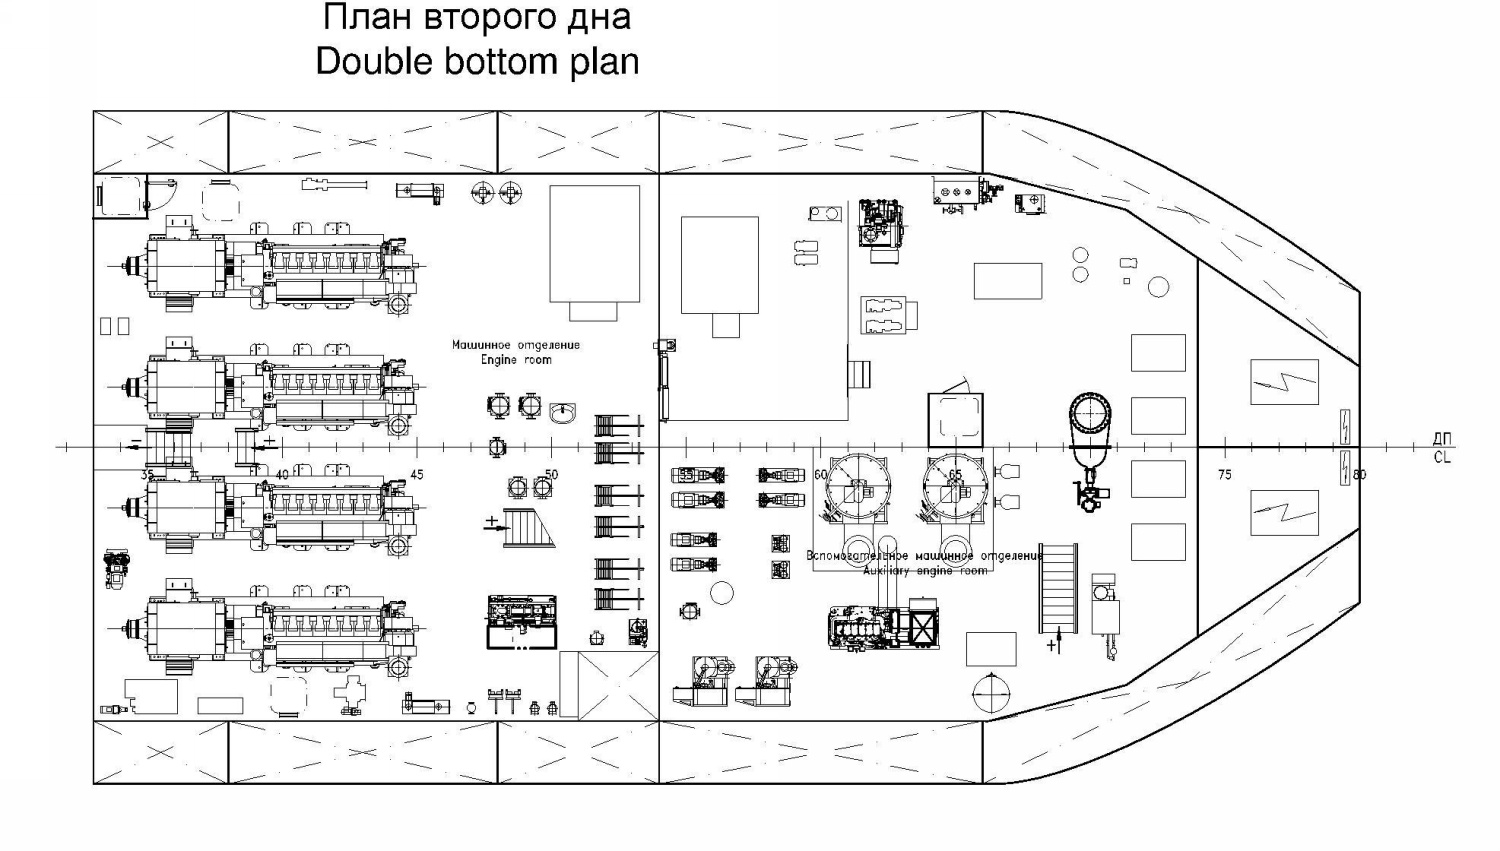 Неопознанное судно - проект HSV05. Планы, схемы, таблицы с судов